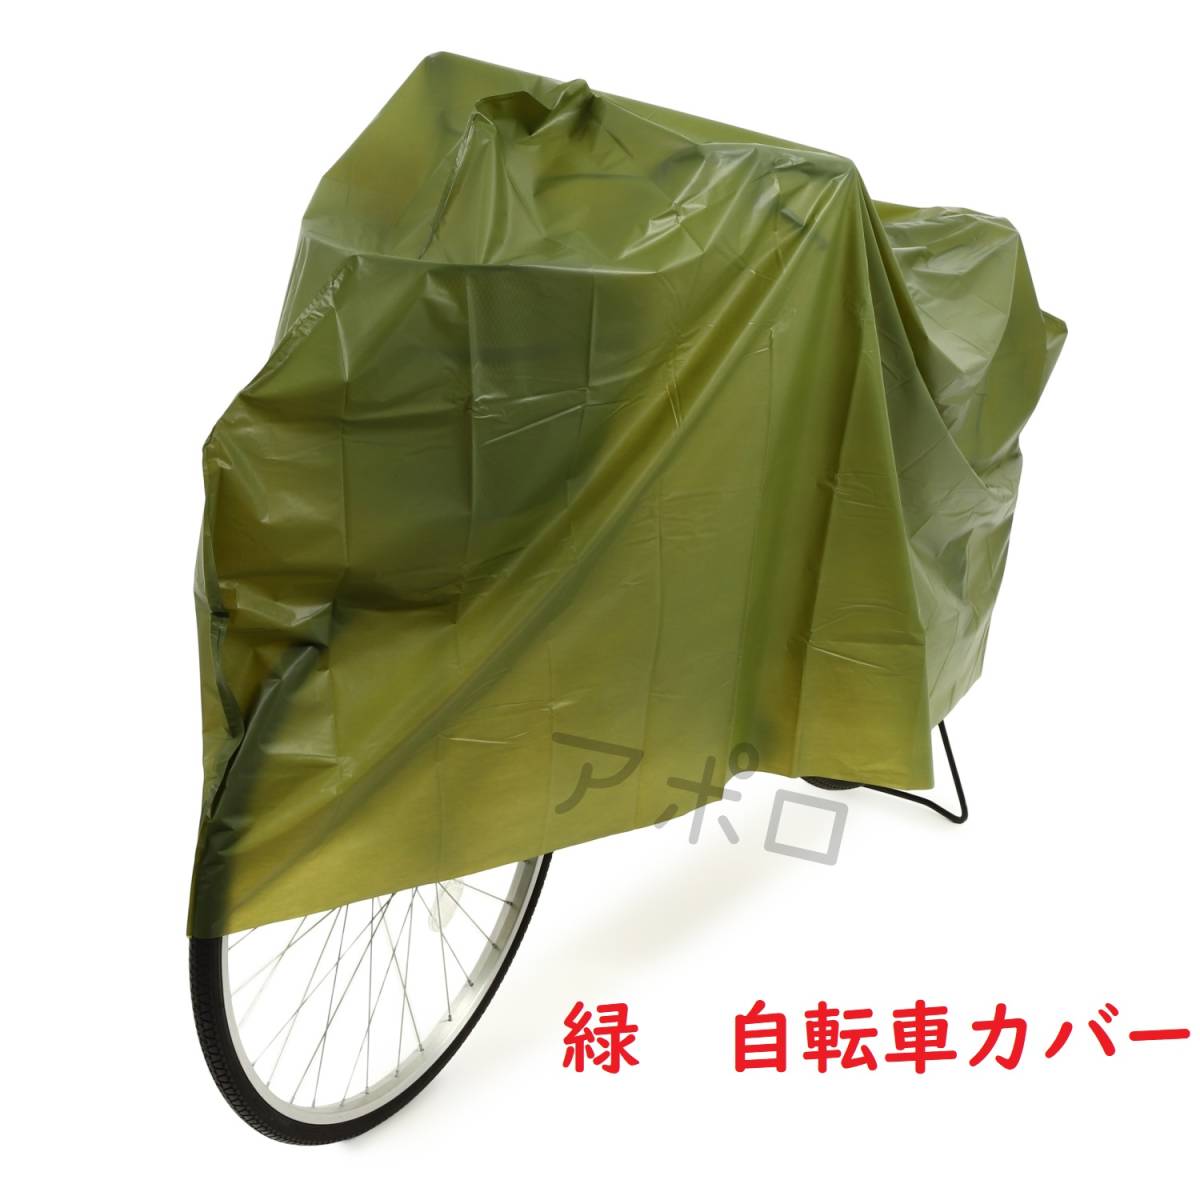 送料無料 自転車カバー 緑色 新品未使用 グリーン No.112 E